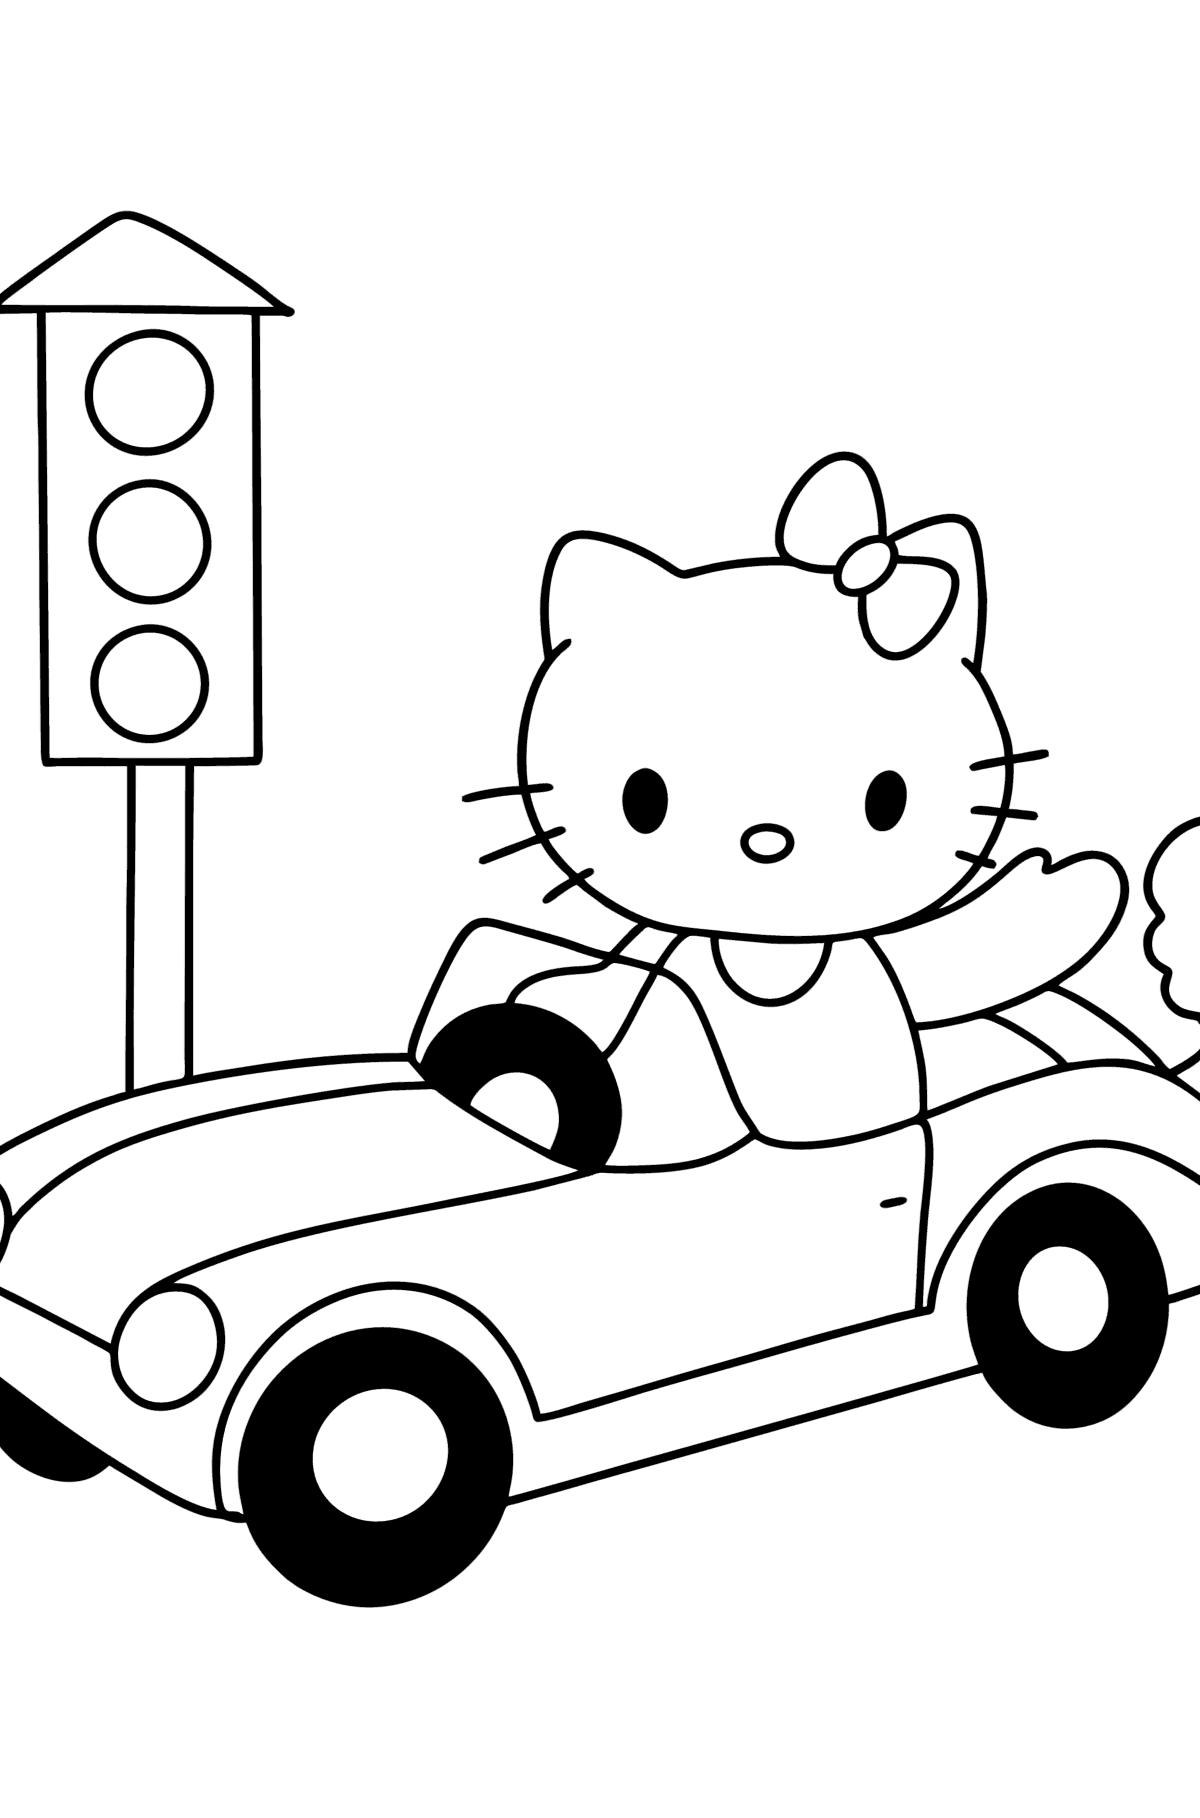 Kleurplaat Hello Kitty en auto - kleurplaten voor kinderen